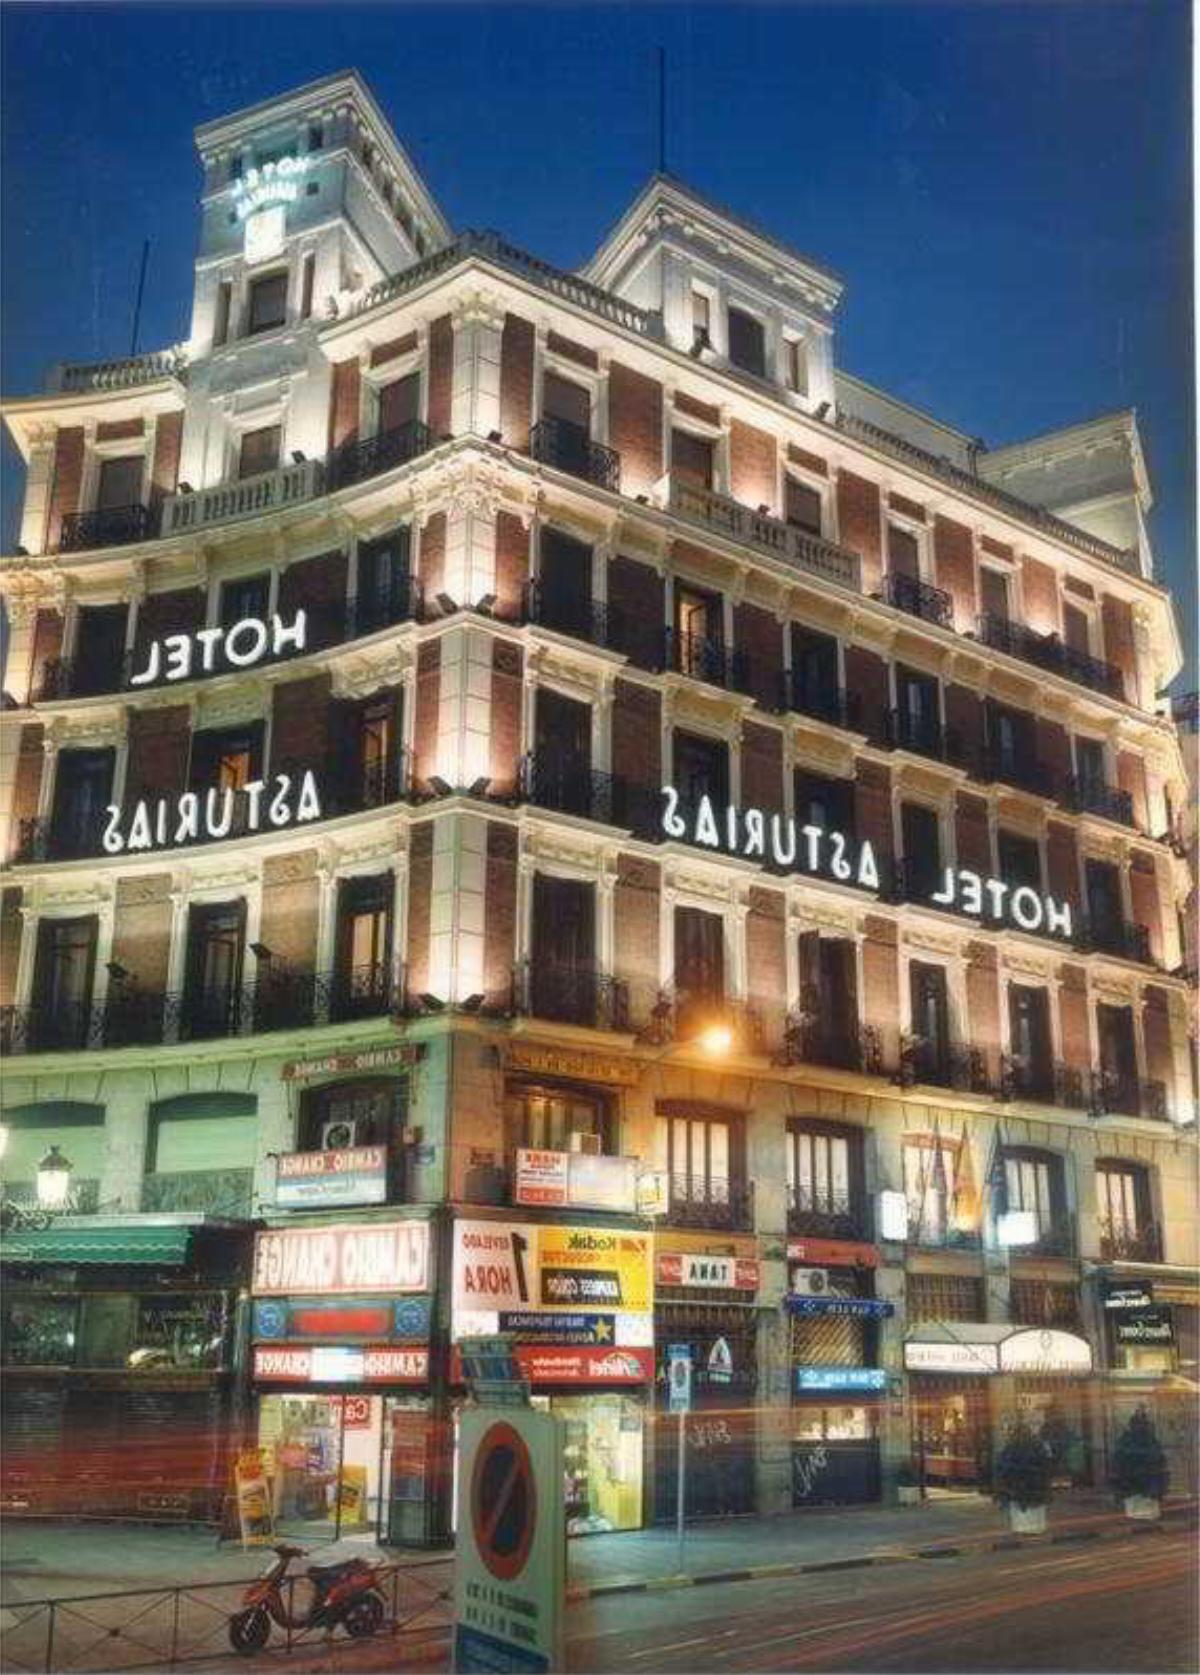 Asturias Hotel Madrid Spain